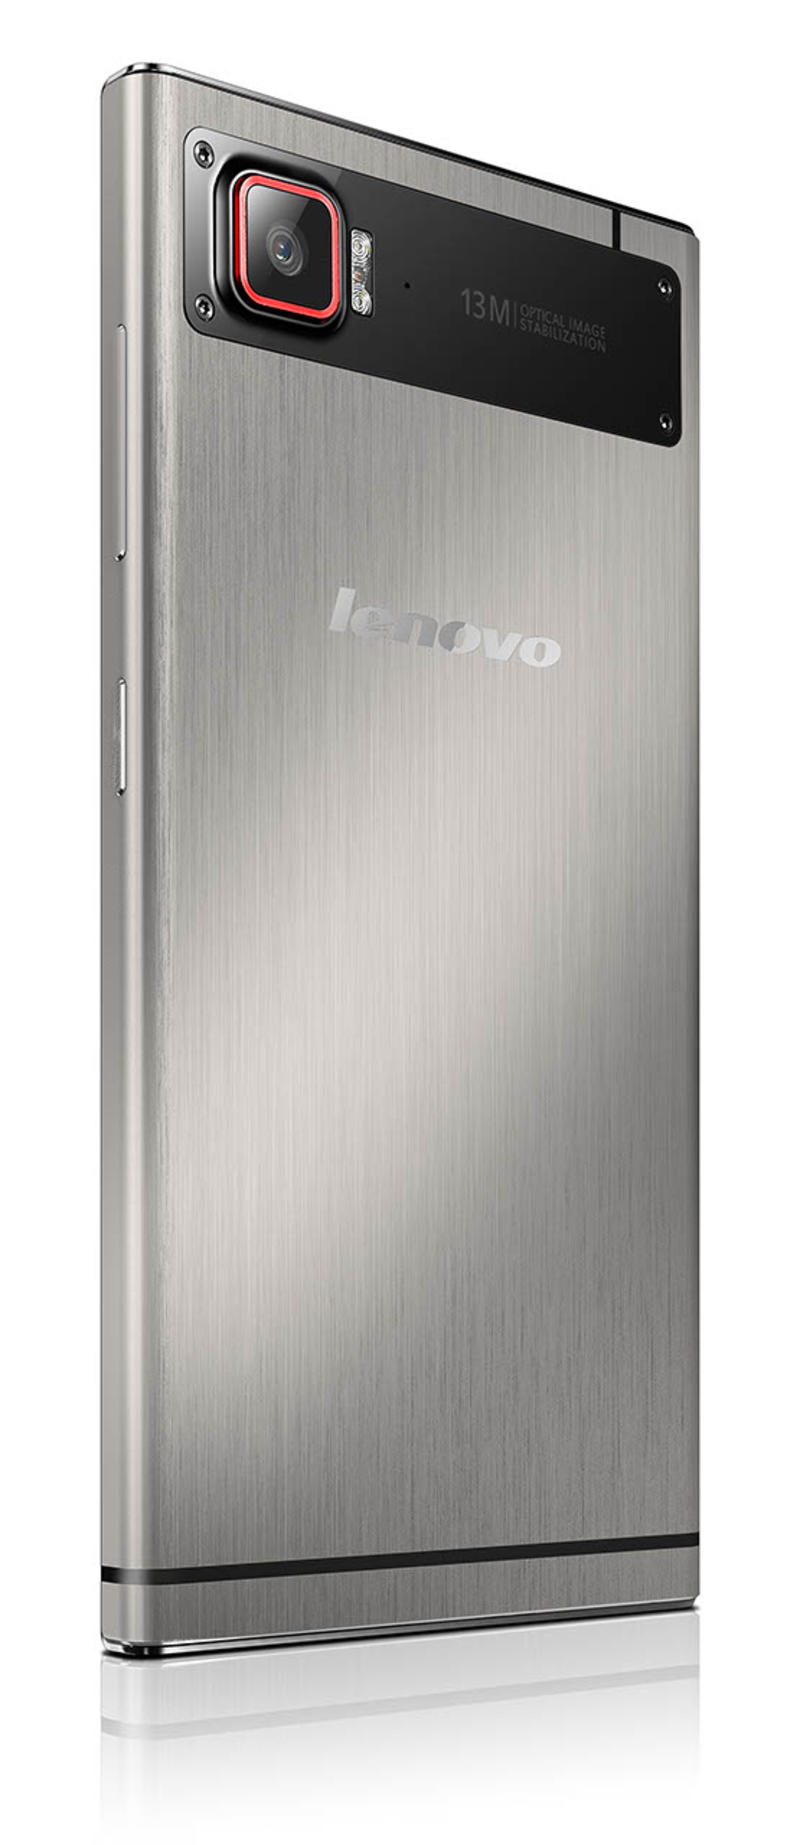 Мощный и тонкий: Lenovo выпустил четырехъядерный смартфон Vibe Z2